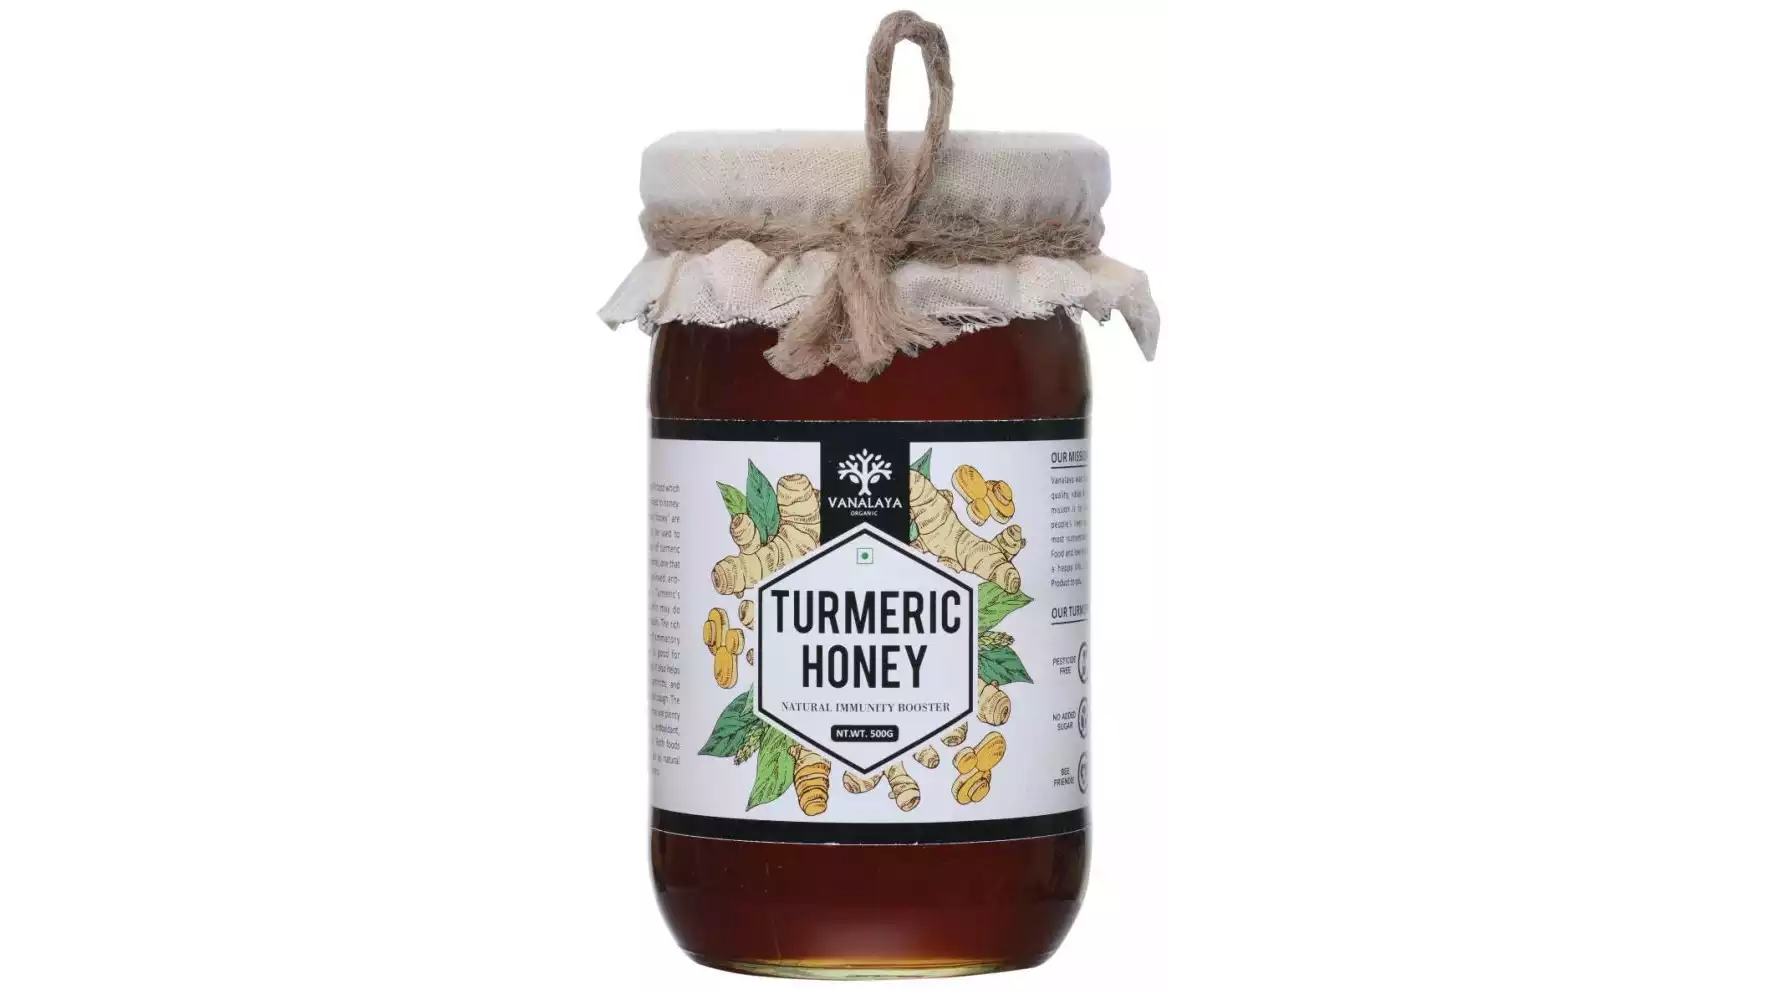 Vanalaya Turmeric Honey (500g)